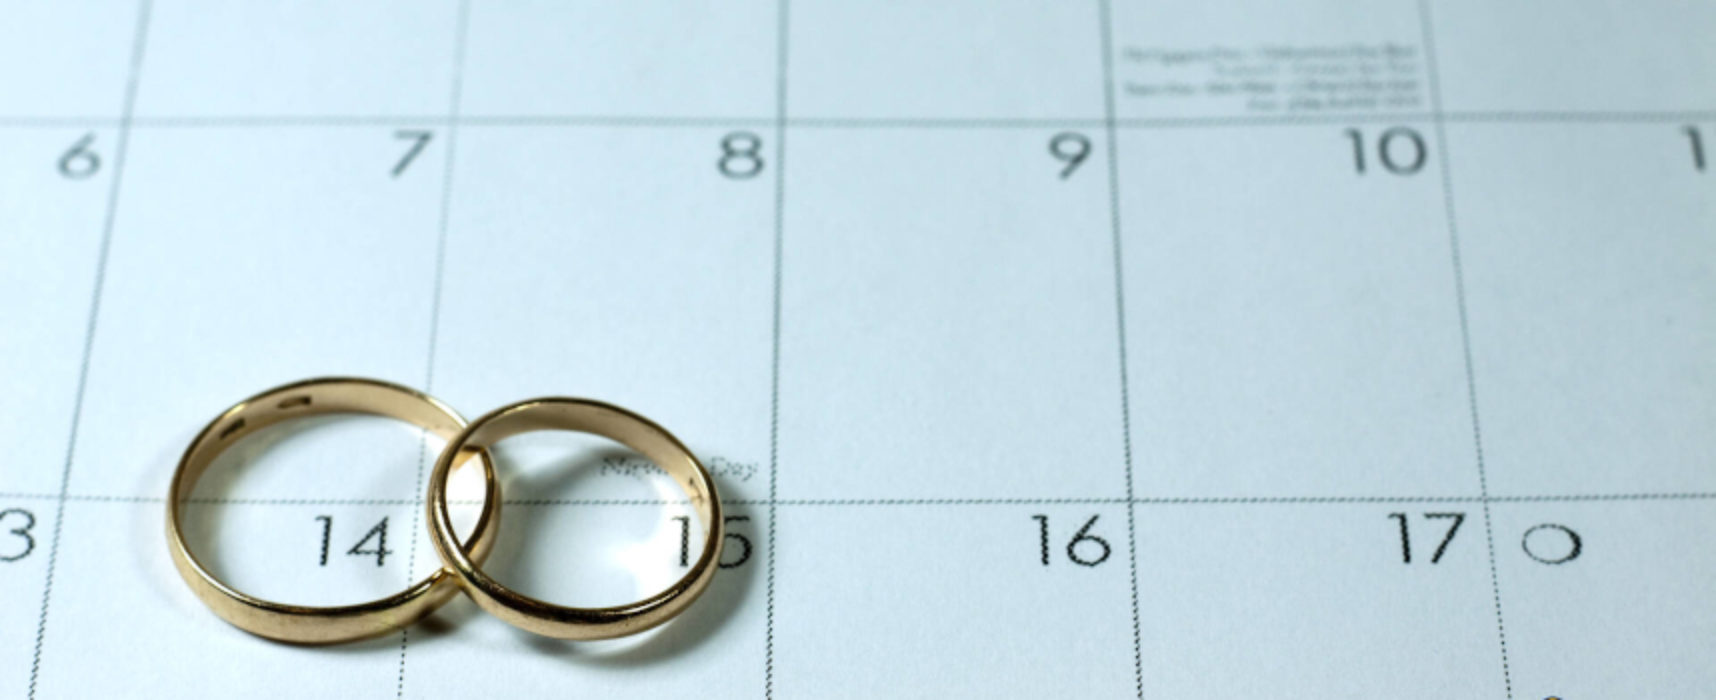 La Regione Puglia ufficializza le linee guida per cerimonie e matrimoni / DETTAGLI